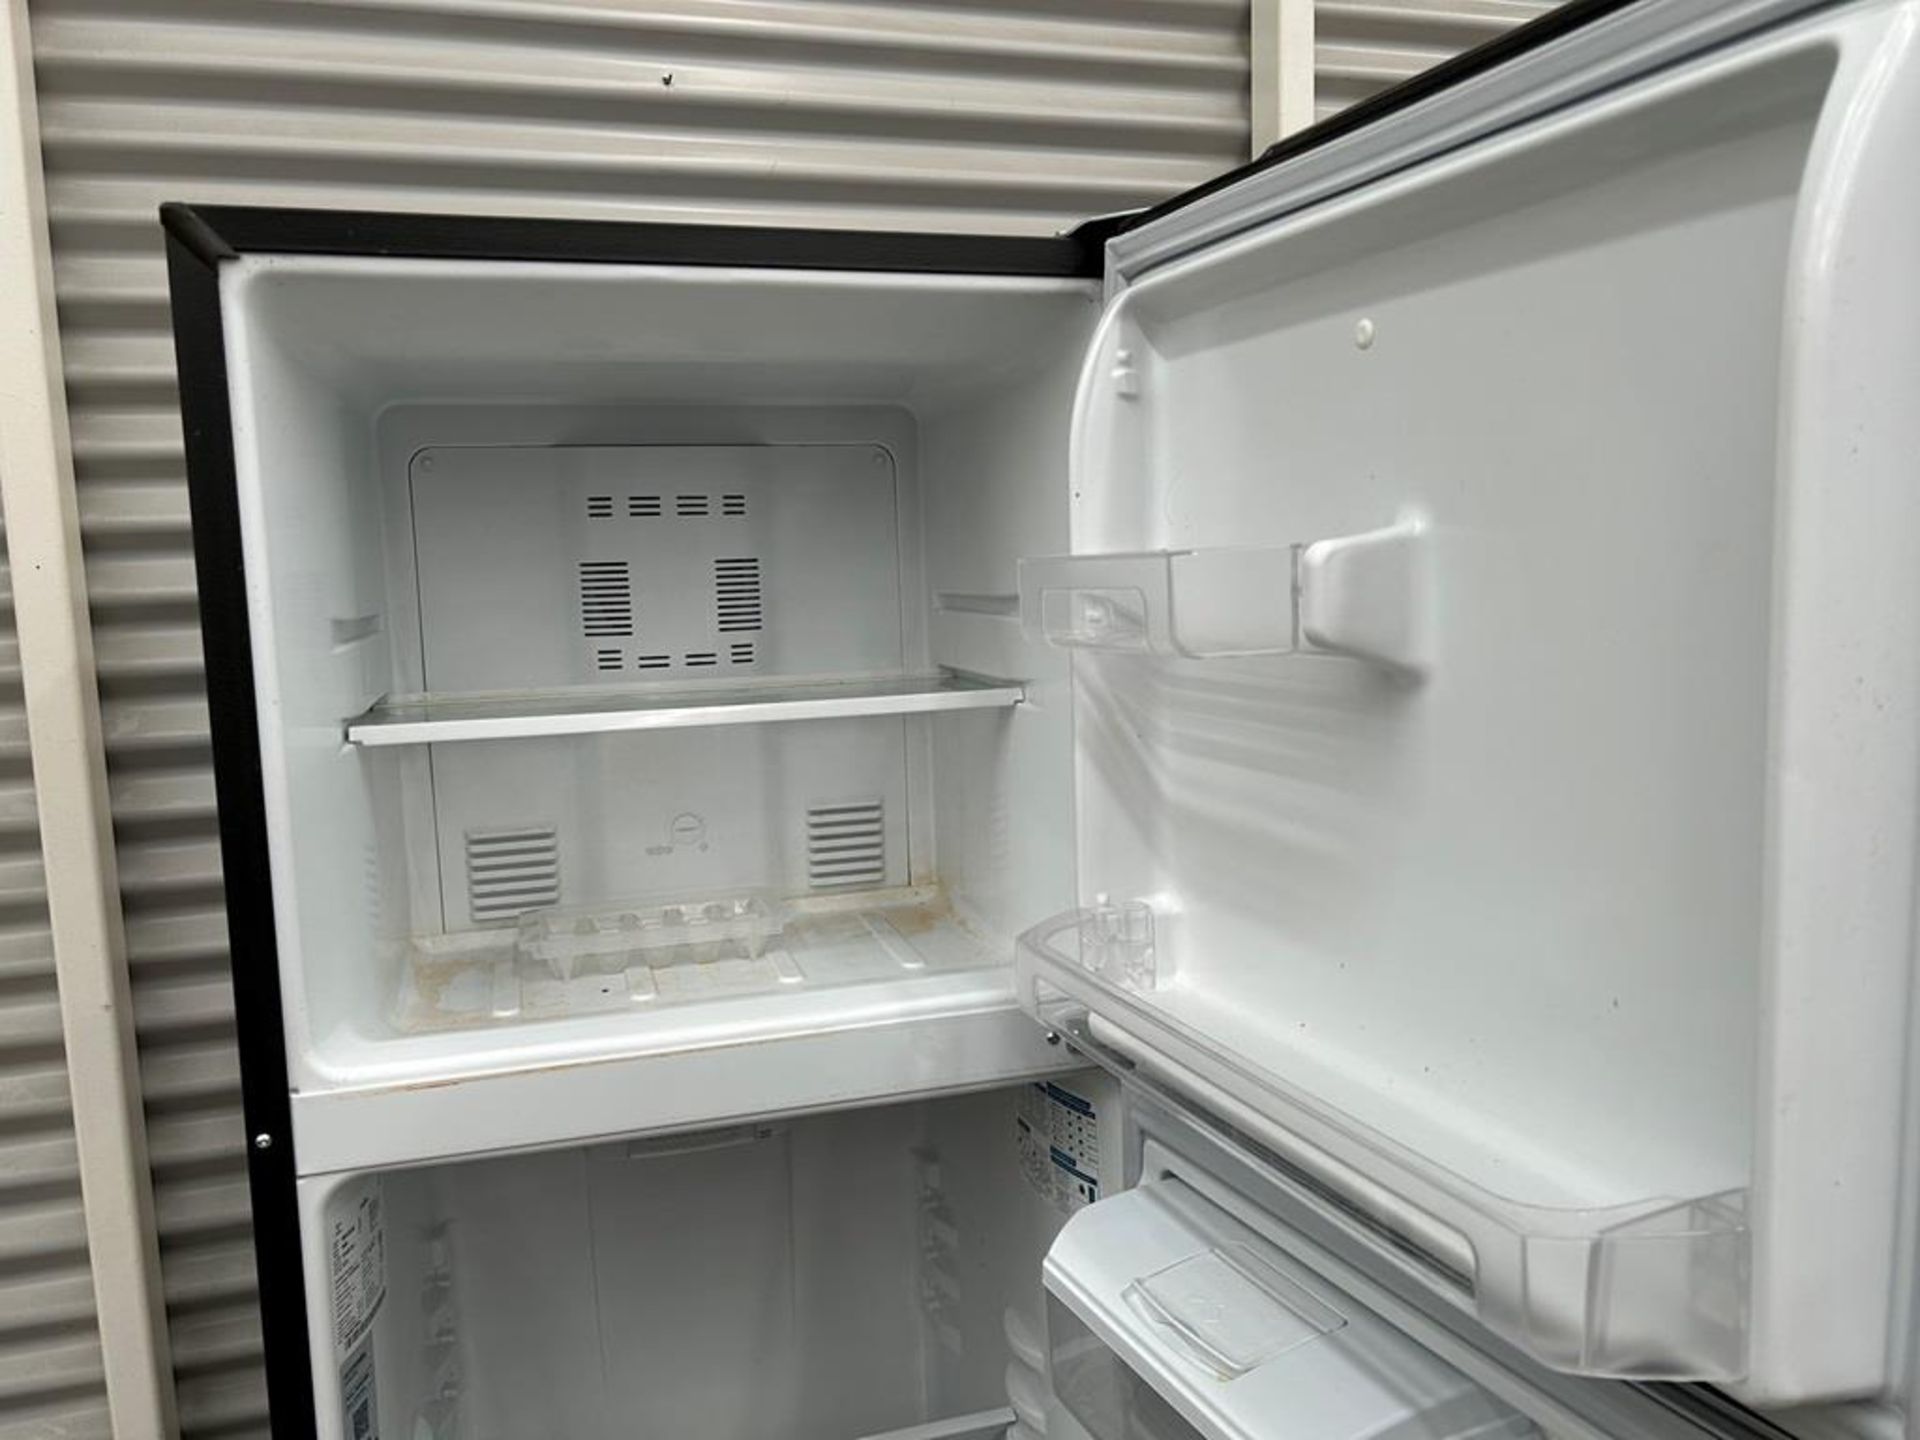 Lote de 2 refrigeradores contiene: 1 Refrigerador con dispensador de agua Marca MABE, Modelo RMA300 - Image 10 of 14